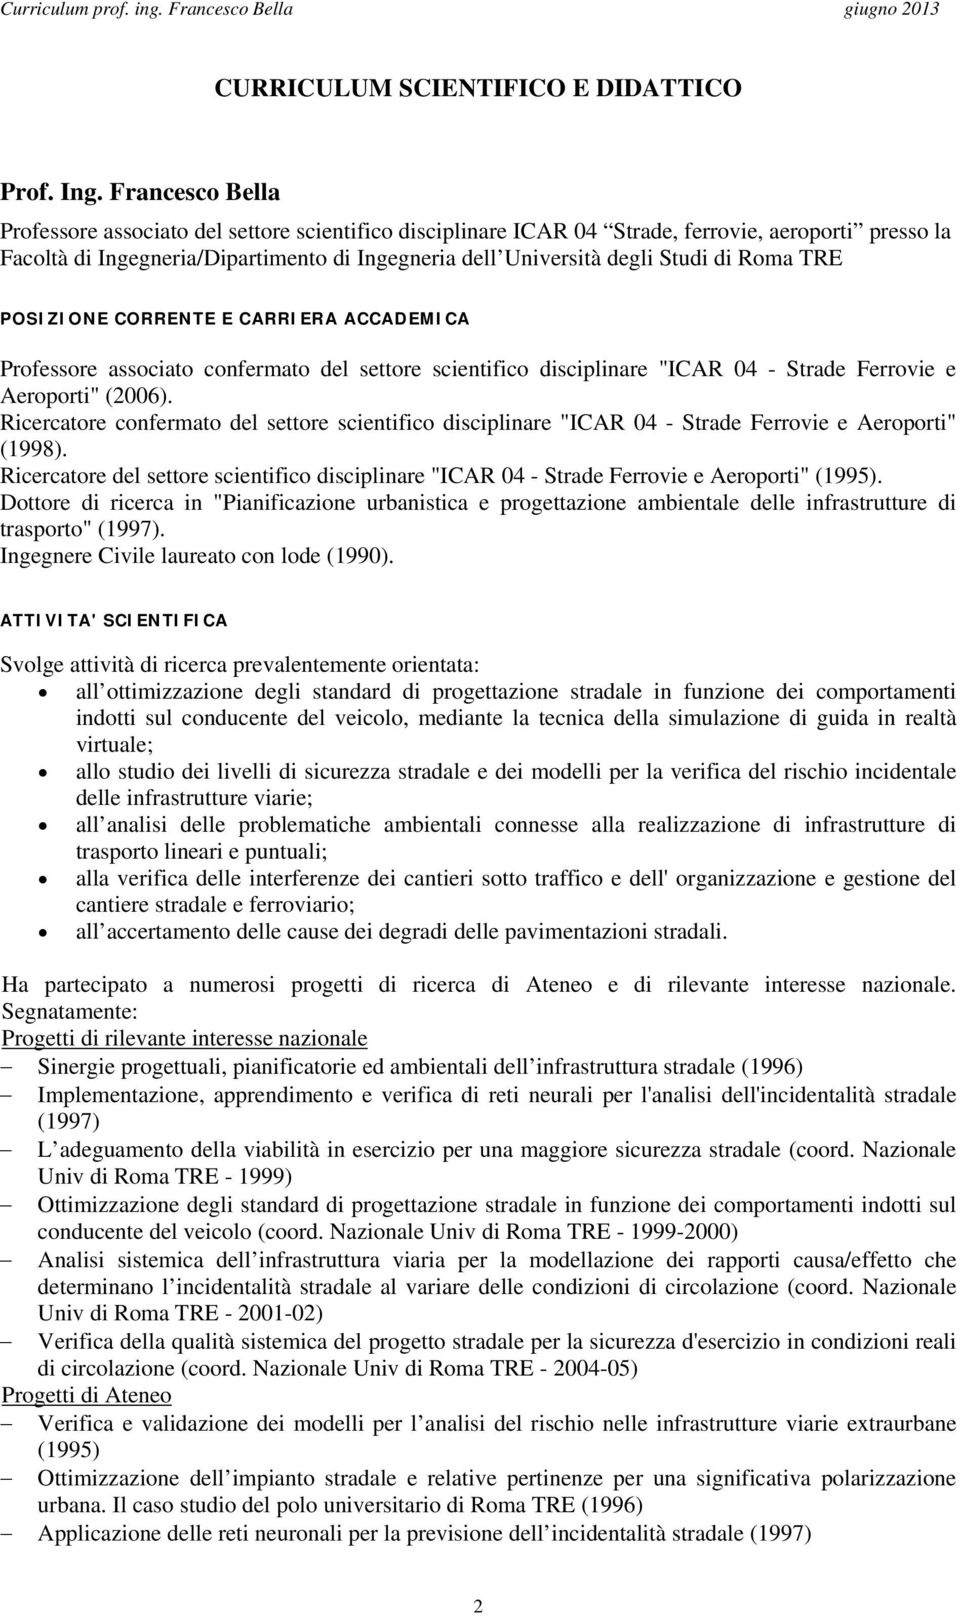 Roma TRE POSIZIONE CORRENTE E CARRIERA ACCADEMICA Professore associato confermato del settore scientifico disciplinare "ICAR 04 - Strade Ferrovie e Aeroporti" (2006).